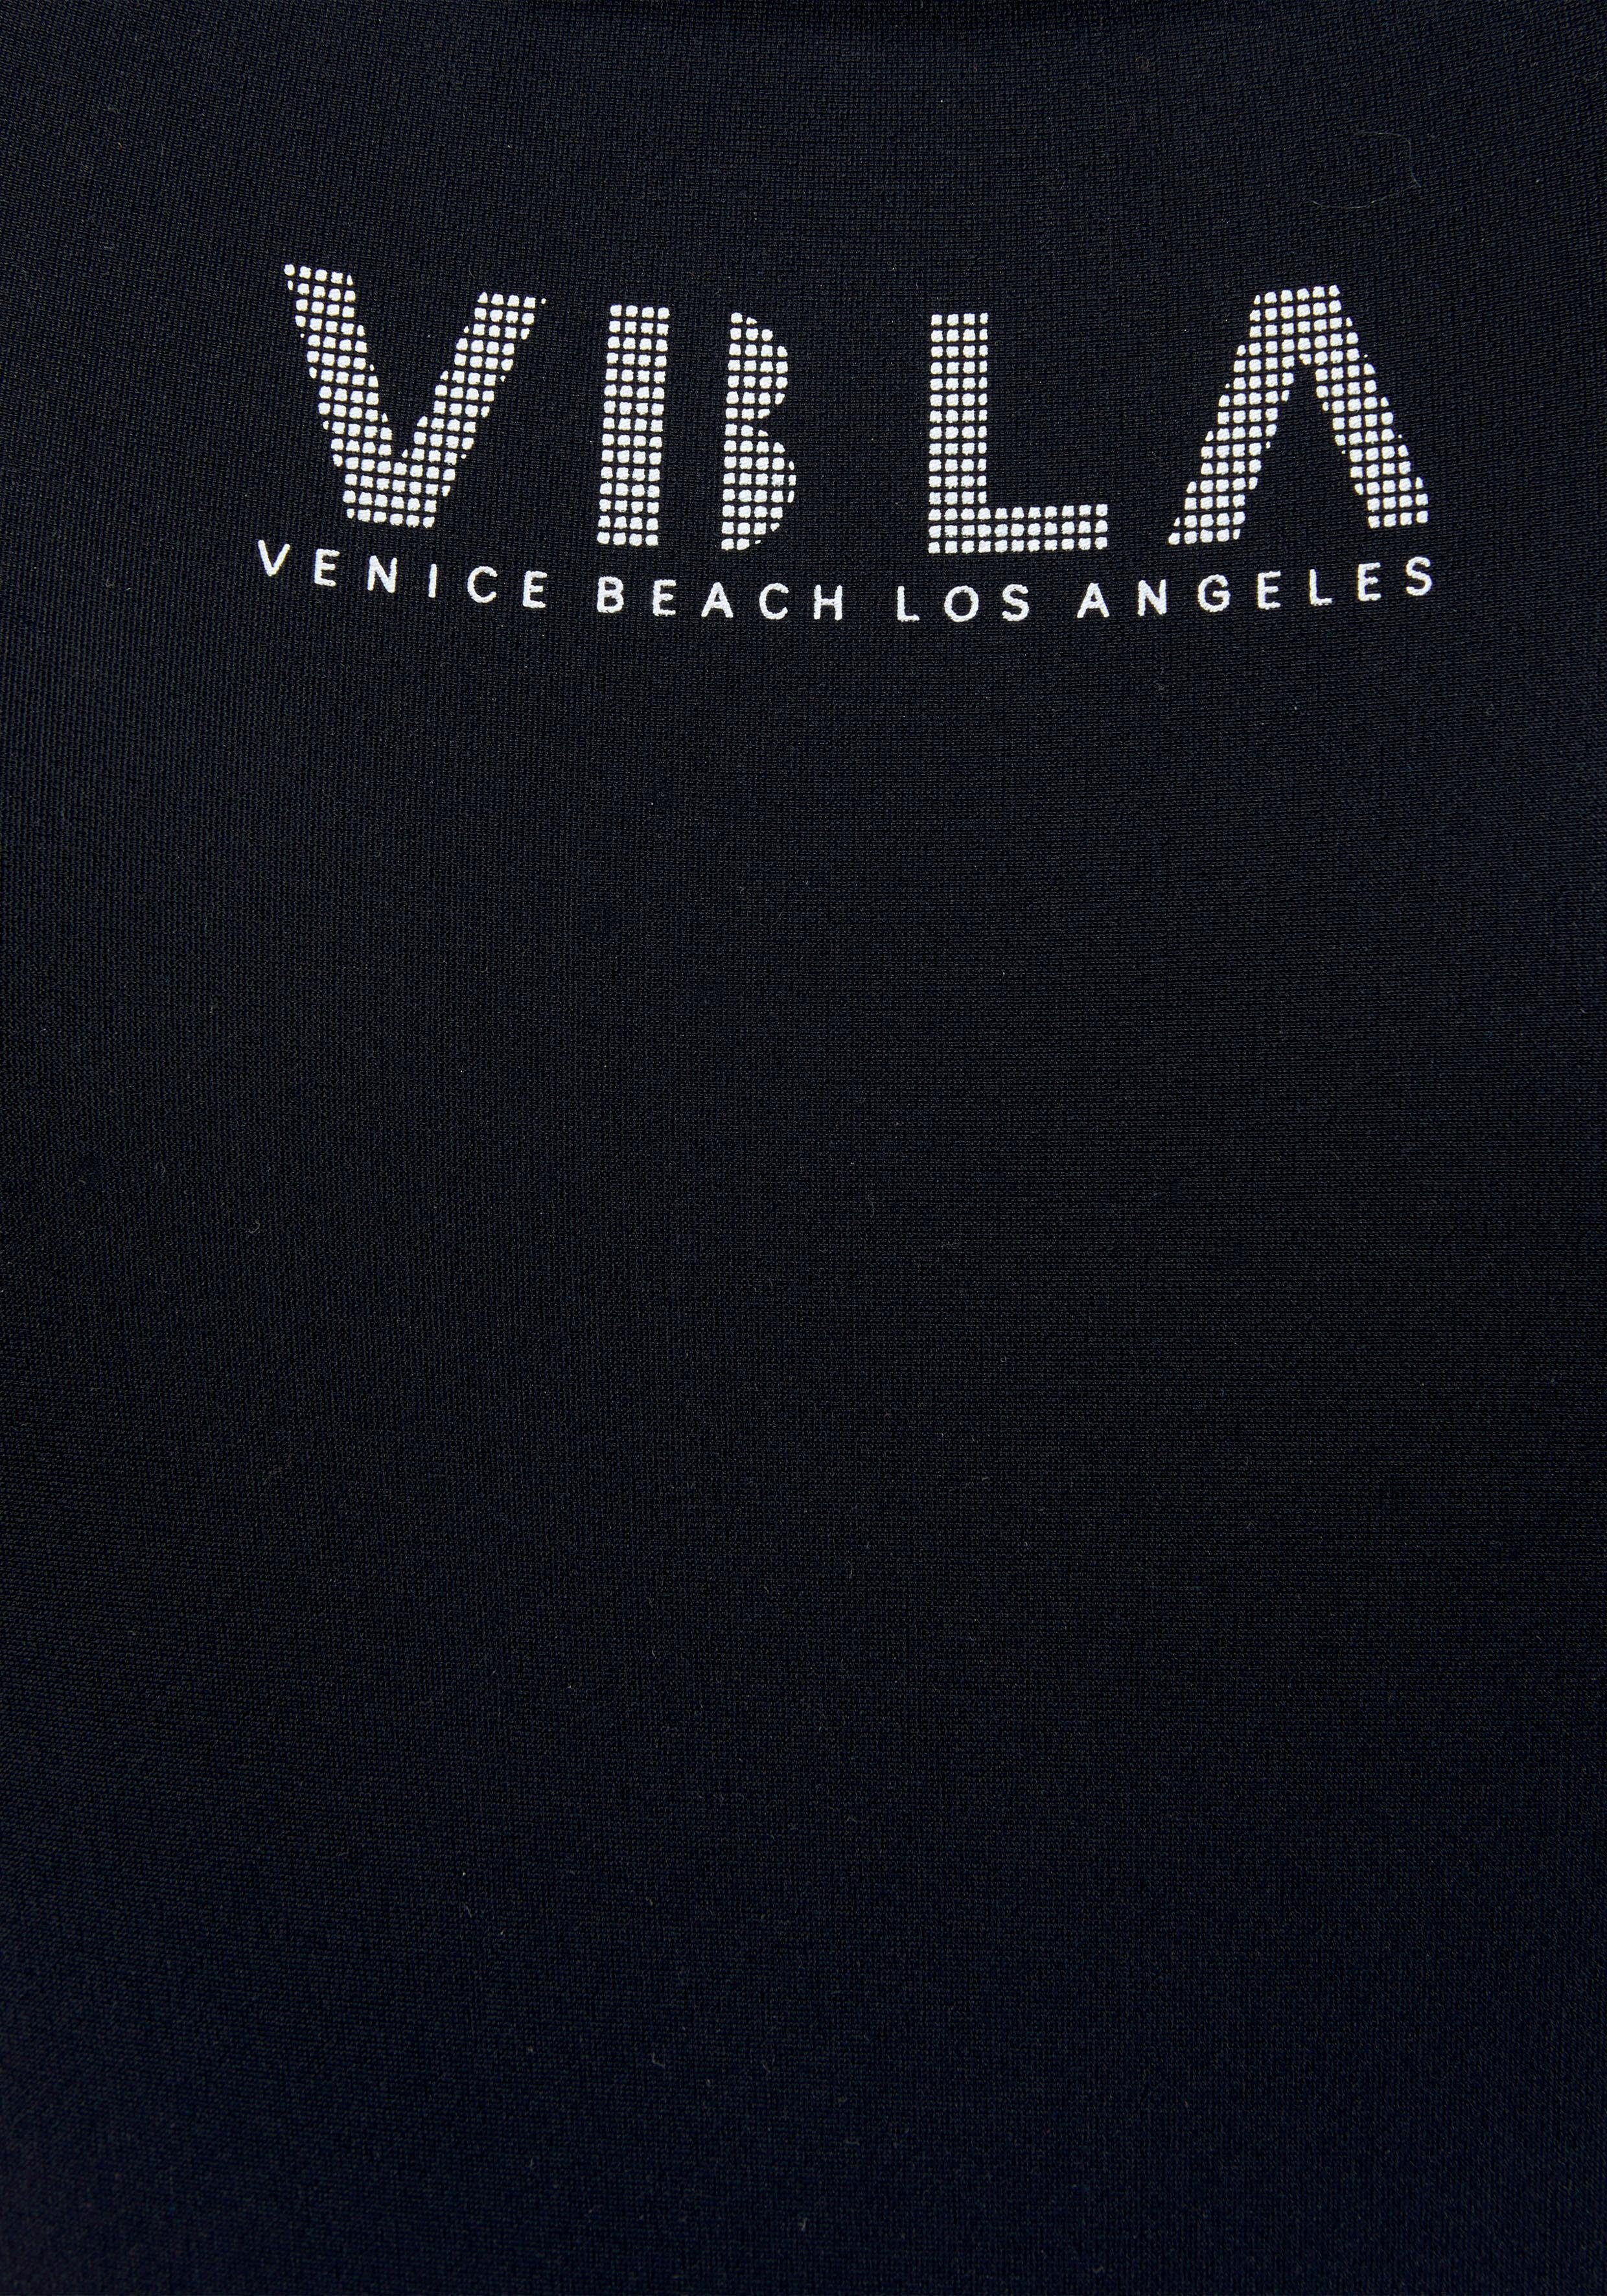 Badeanzug Logodruck Beach Venice und Mit Colorblocking-Einsätzen